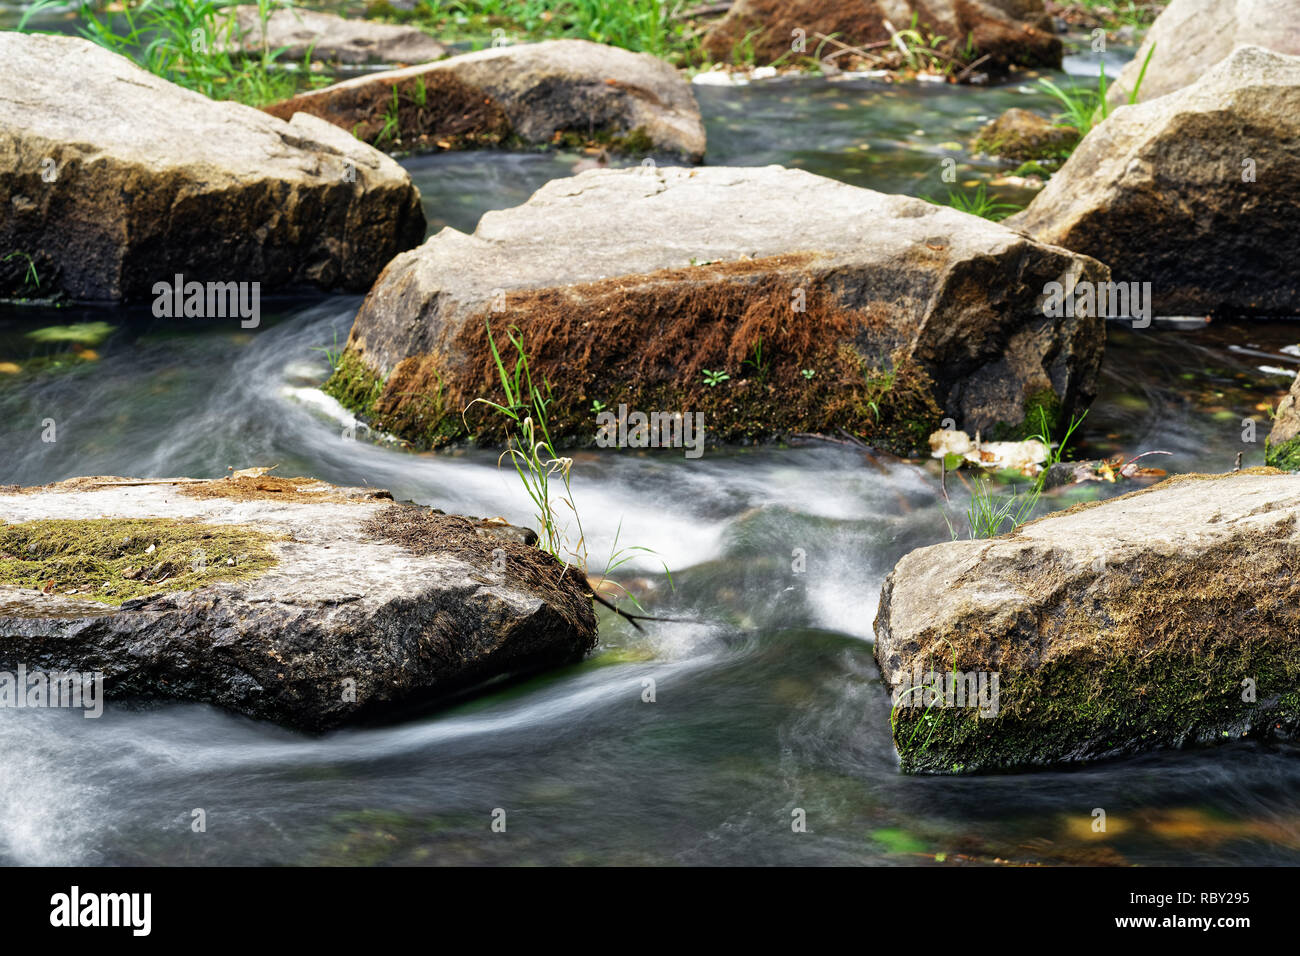 Detailansicht des fließenden Wasser eines kleinen Flusses, fließt das Wasser zwischen großen Steinen, teilweise mit Moos und Gras bewachsen, Langzeitbelichtung Stockfoto